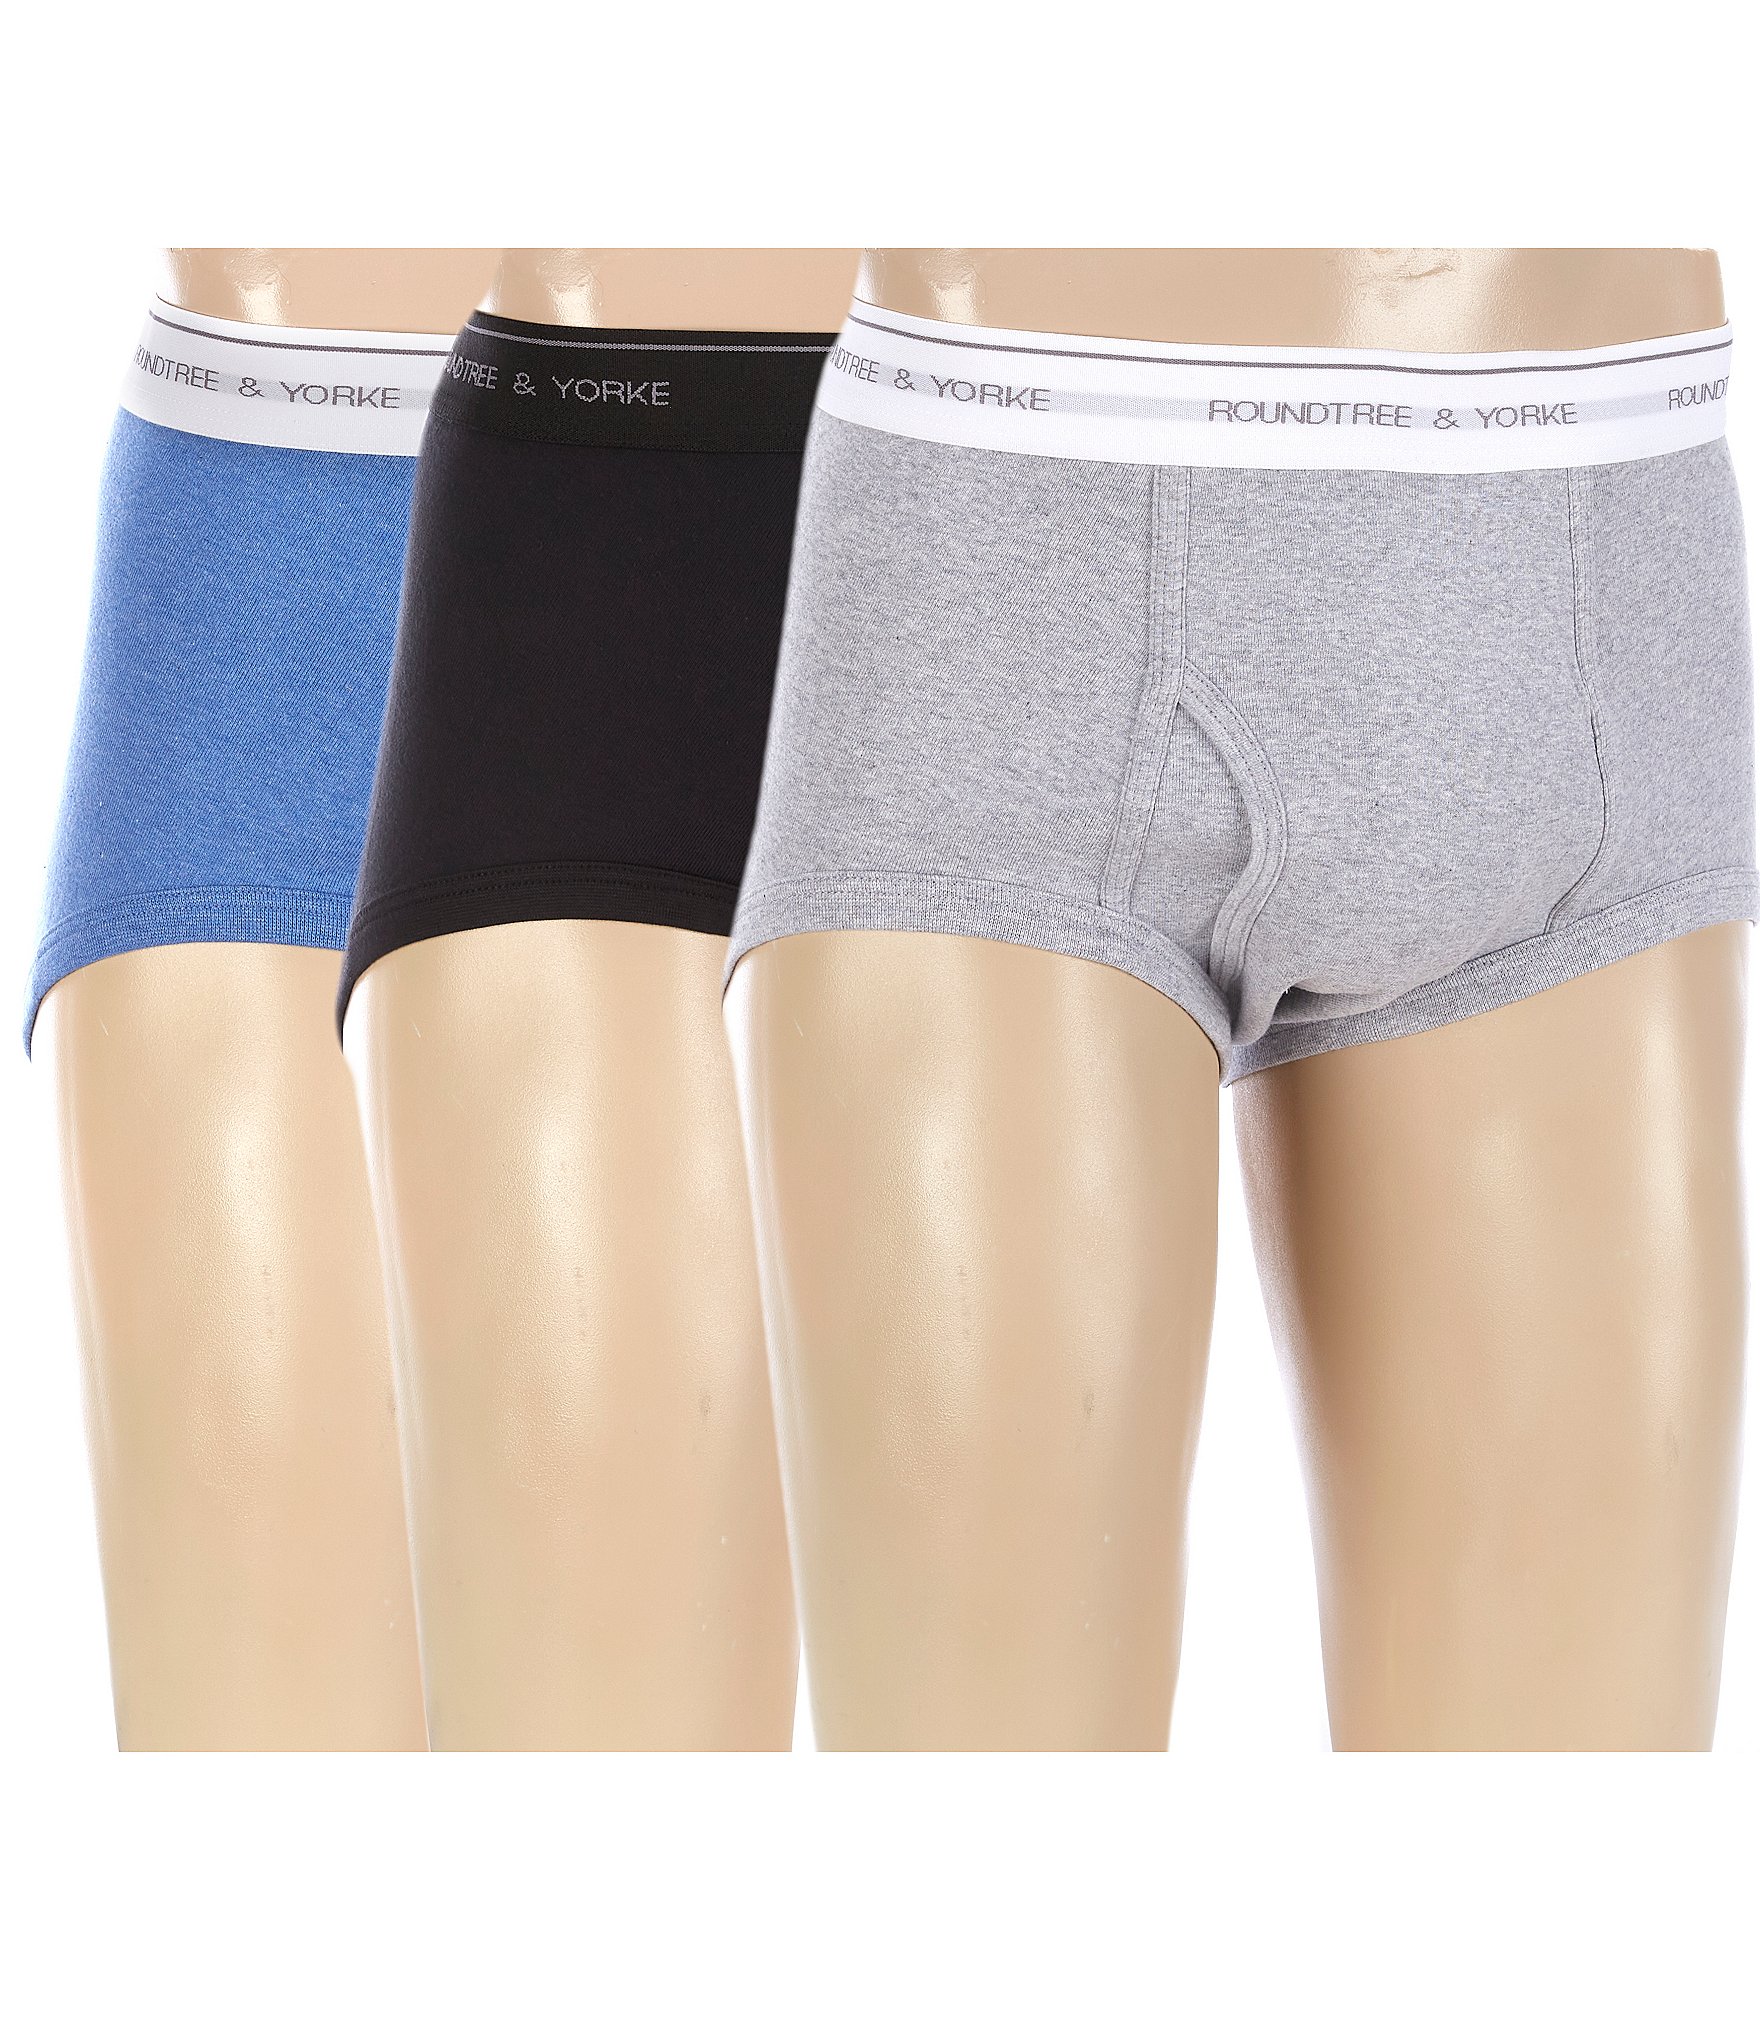 mens underwear: Men's Underwear Socks & Undershirts